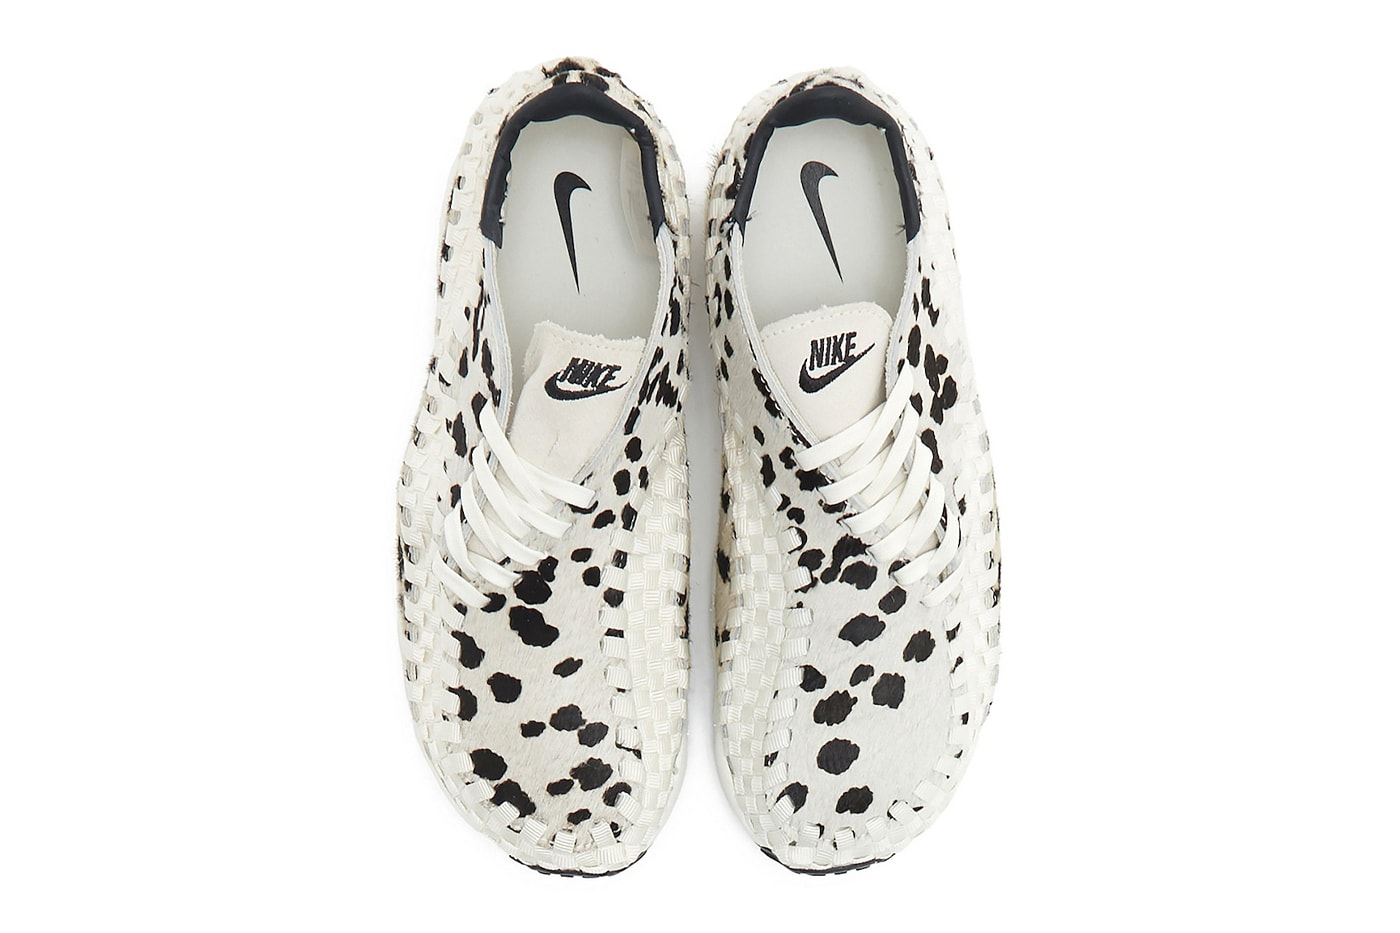 ナイキエアフットケープウーブンからカウパターンを配した新色 “ホワイトカウ”が登場 Nike Air Footscape Woven White Cow FB1959-102 Release Info